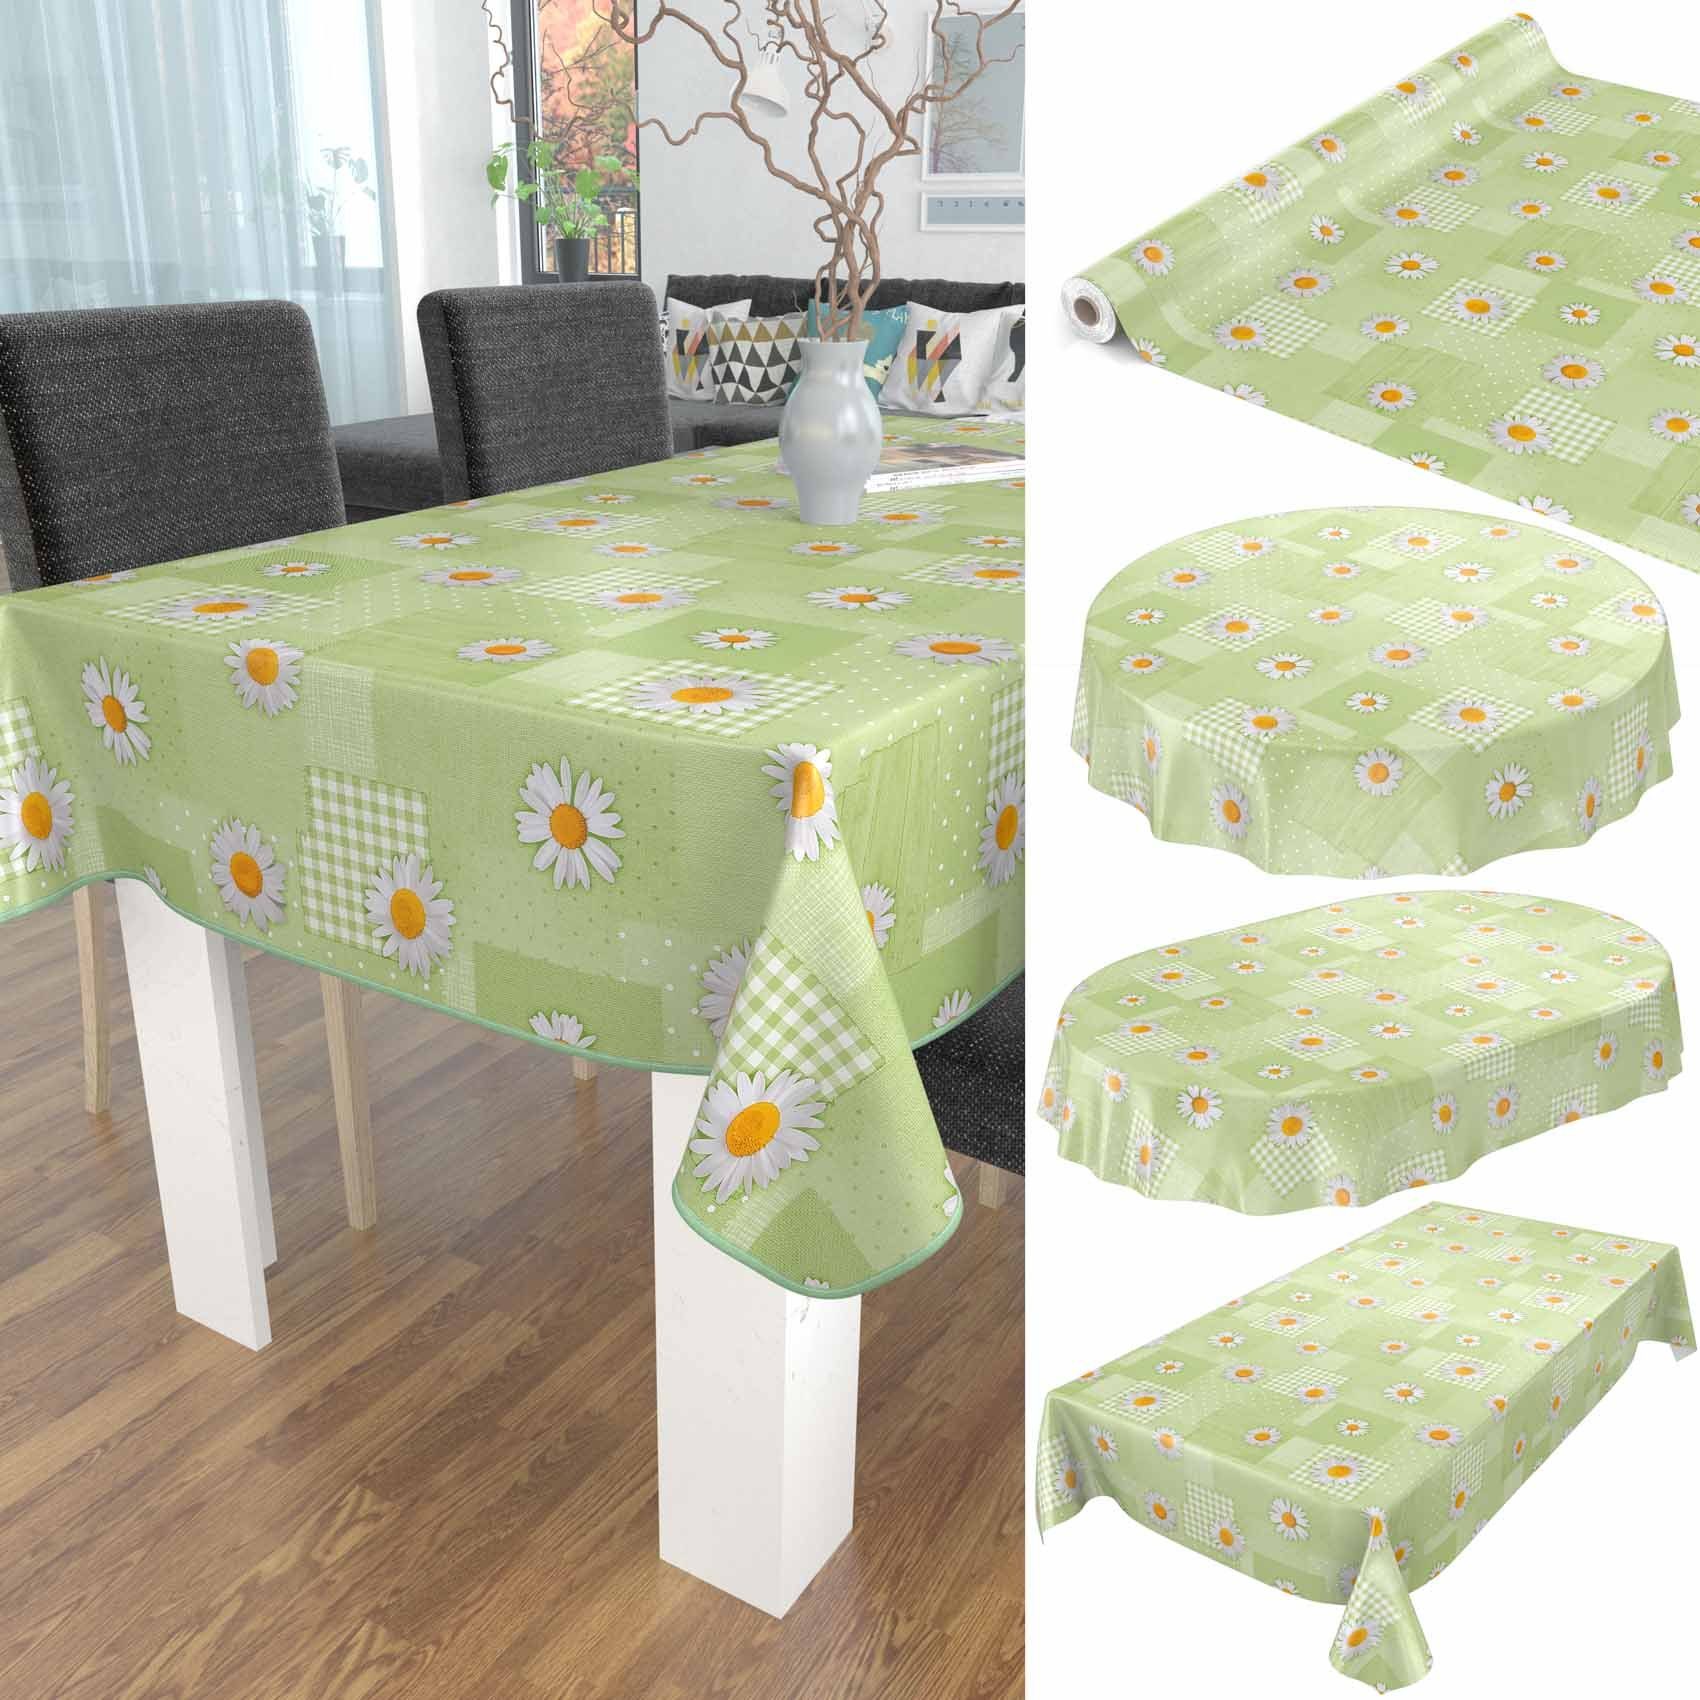 Breite ANRO Wachstuch Tischdecke Tischdecke Geprägt Robust 140 cm, Grün Wasserabweisend Blumen